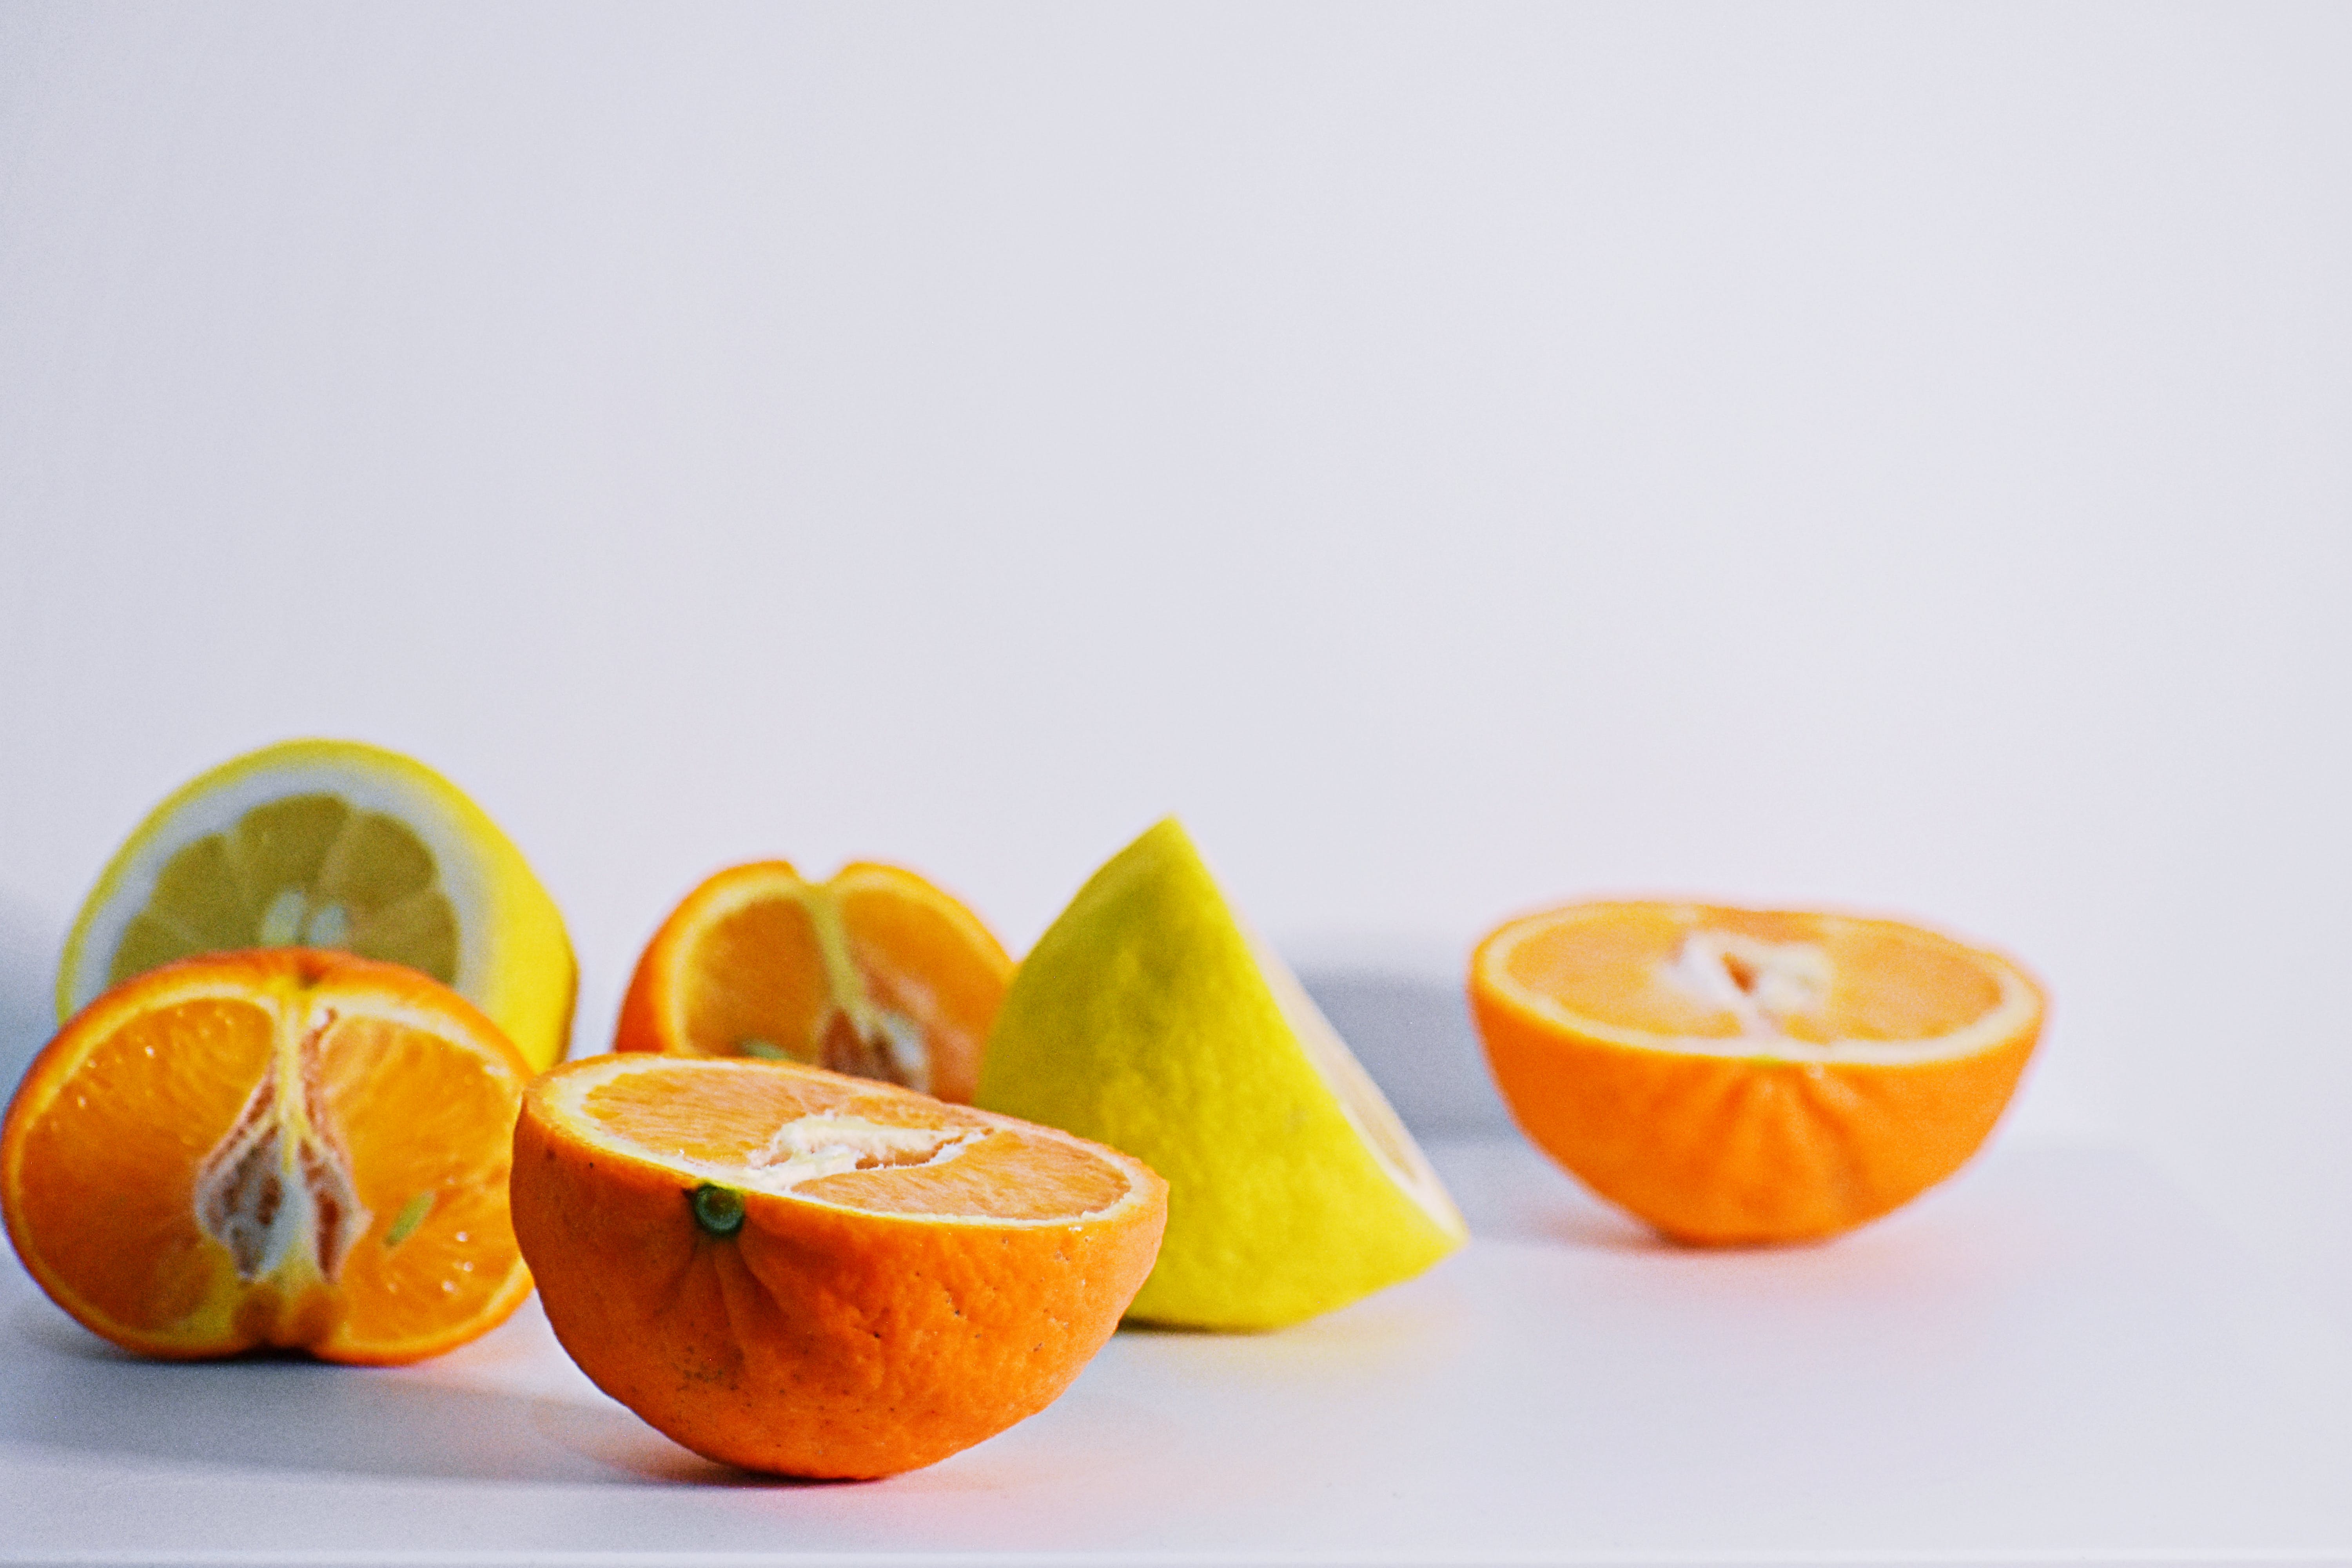 В Україні зросли ціни на цитрусові: скільки доведеться віддати за кілограм апельсинів та мандаринів